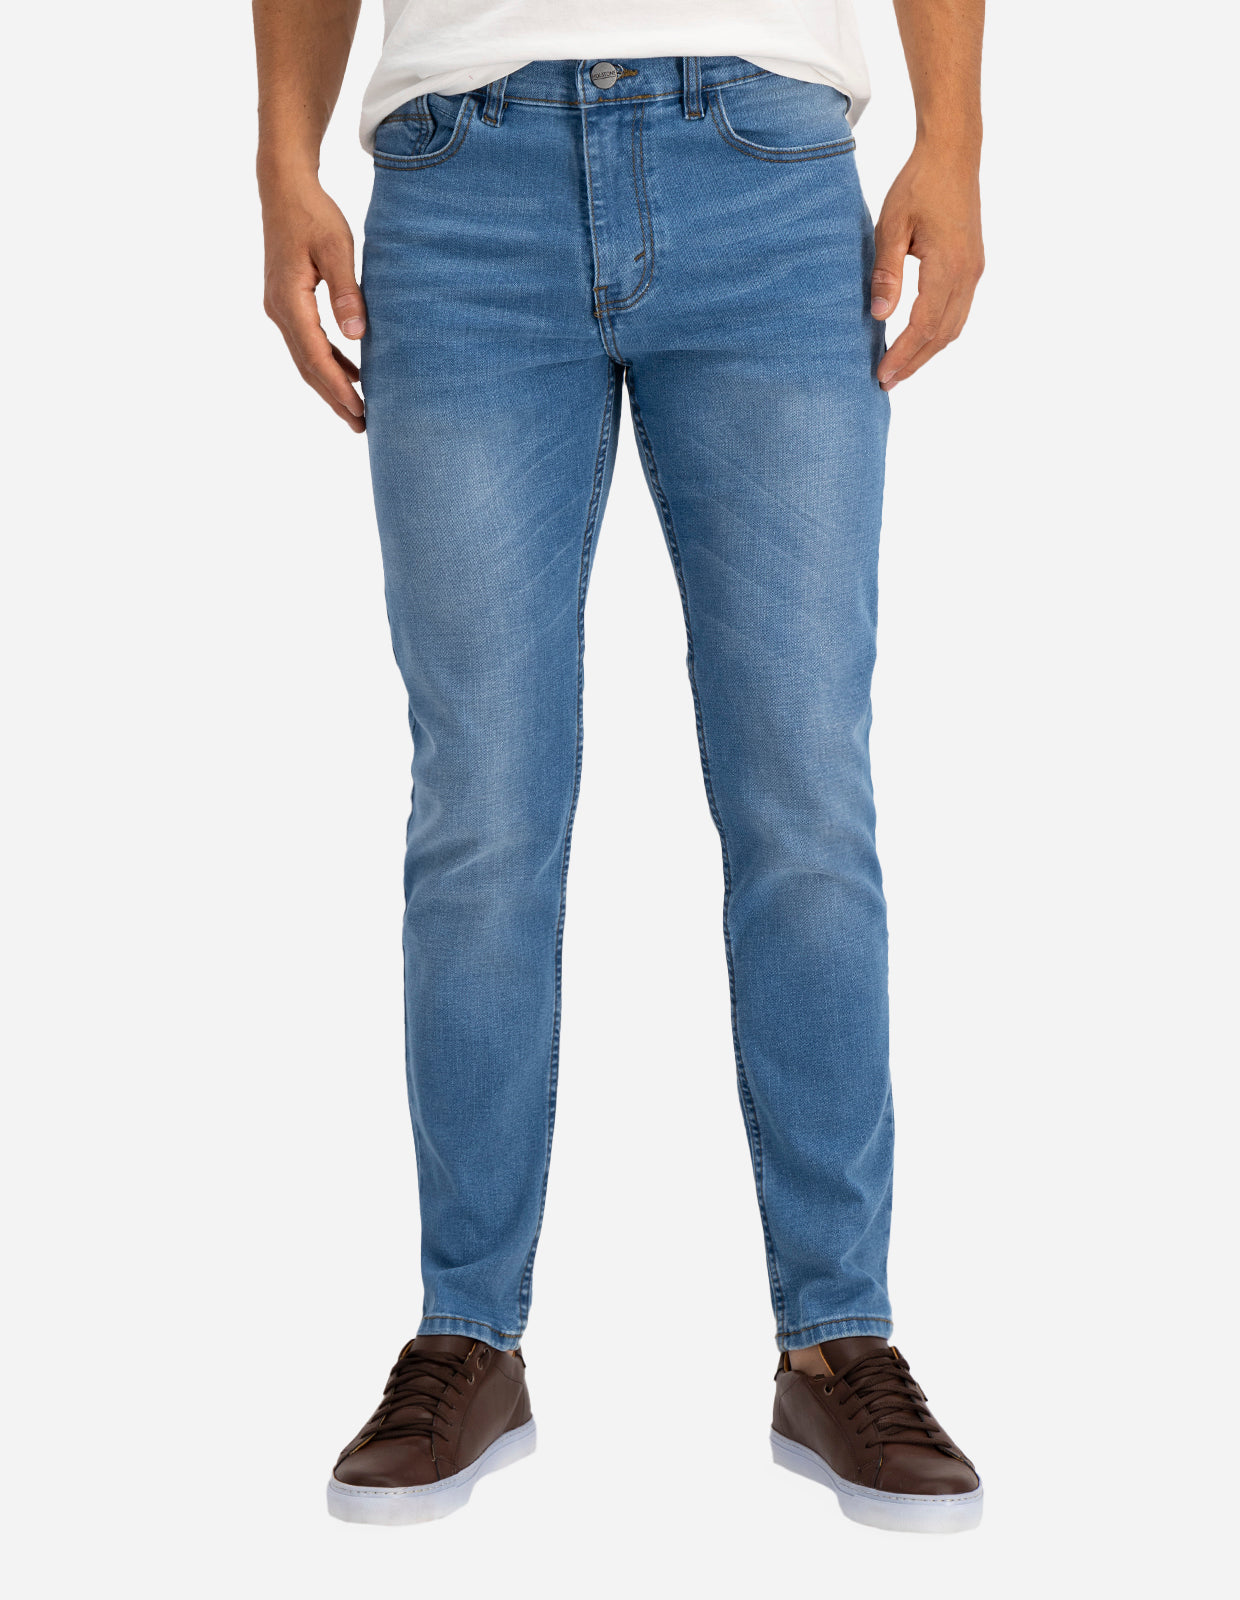 Jeans de Mezclilla Premium Slim Fit - Pekín